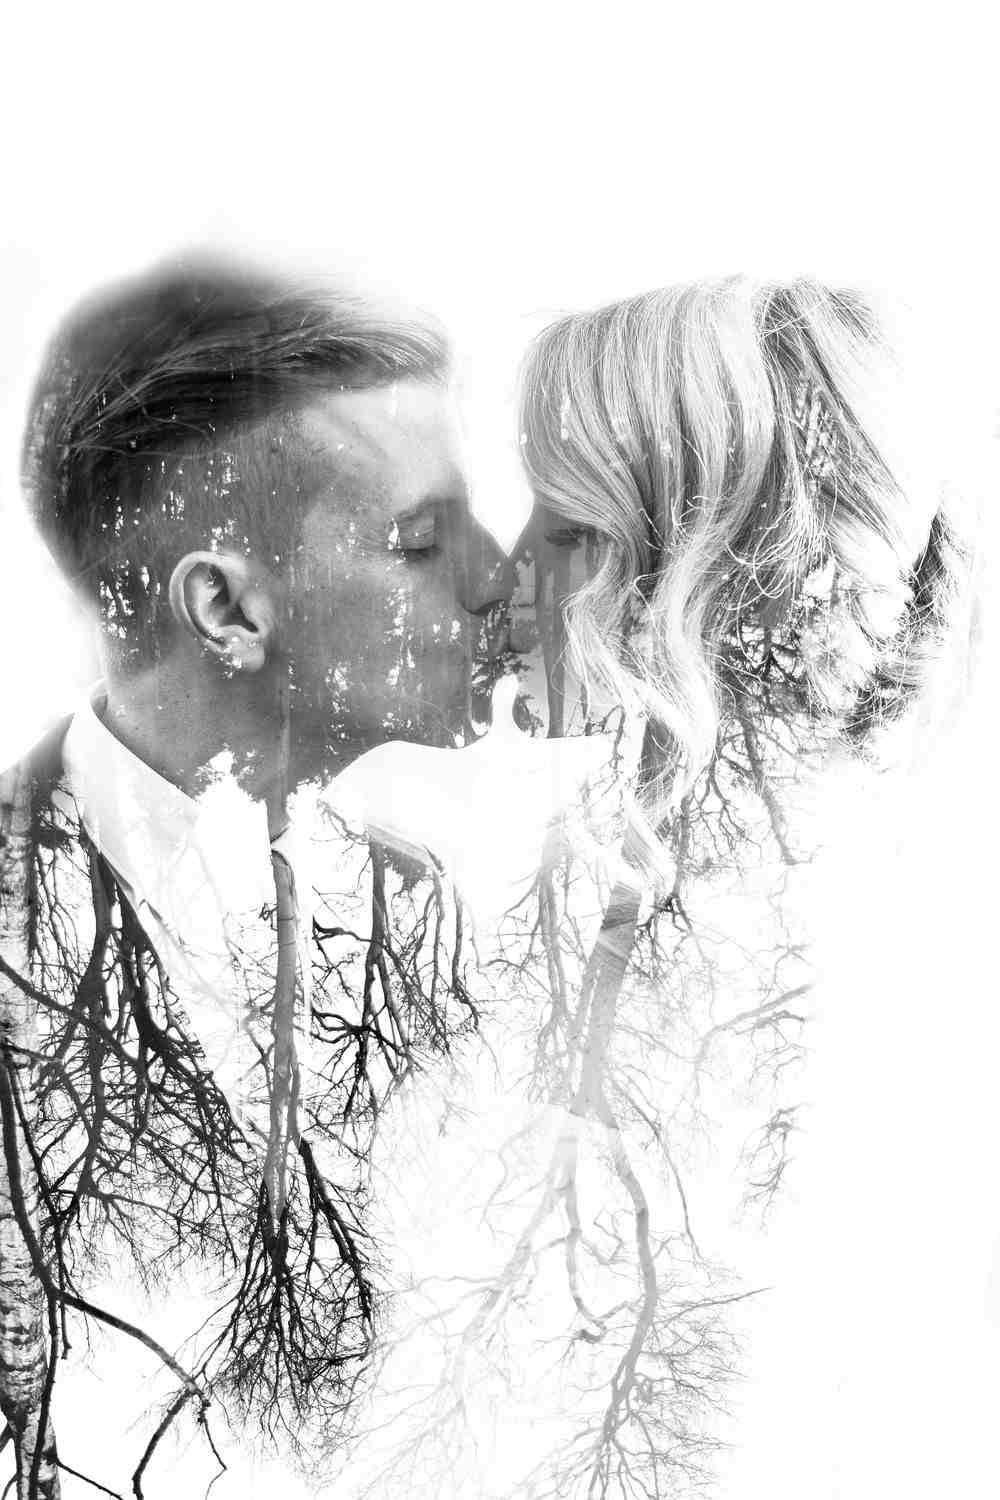 Bäume und Brautpaar in Schwarz-Weiß für Retro-Effekt und originelle Hochzeitsfotos